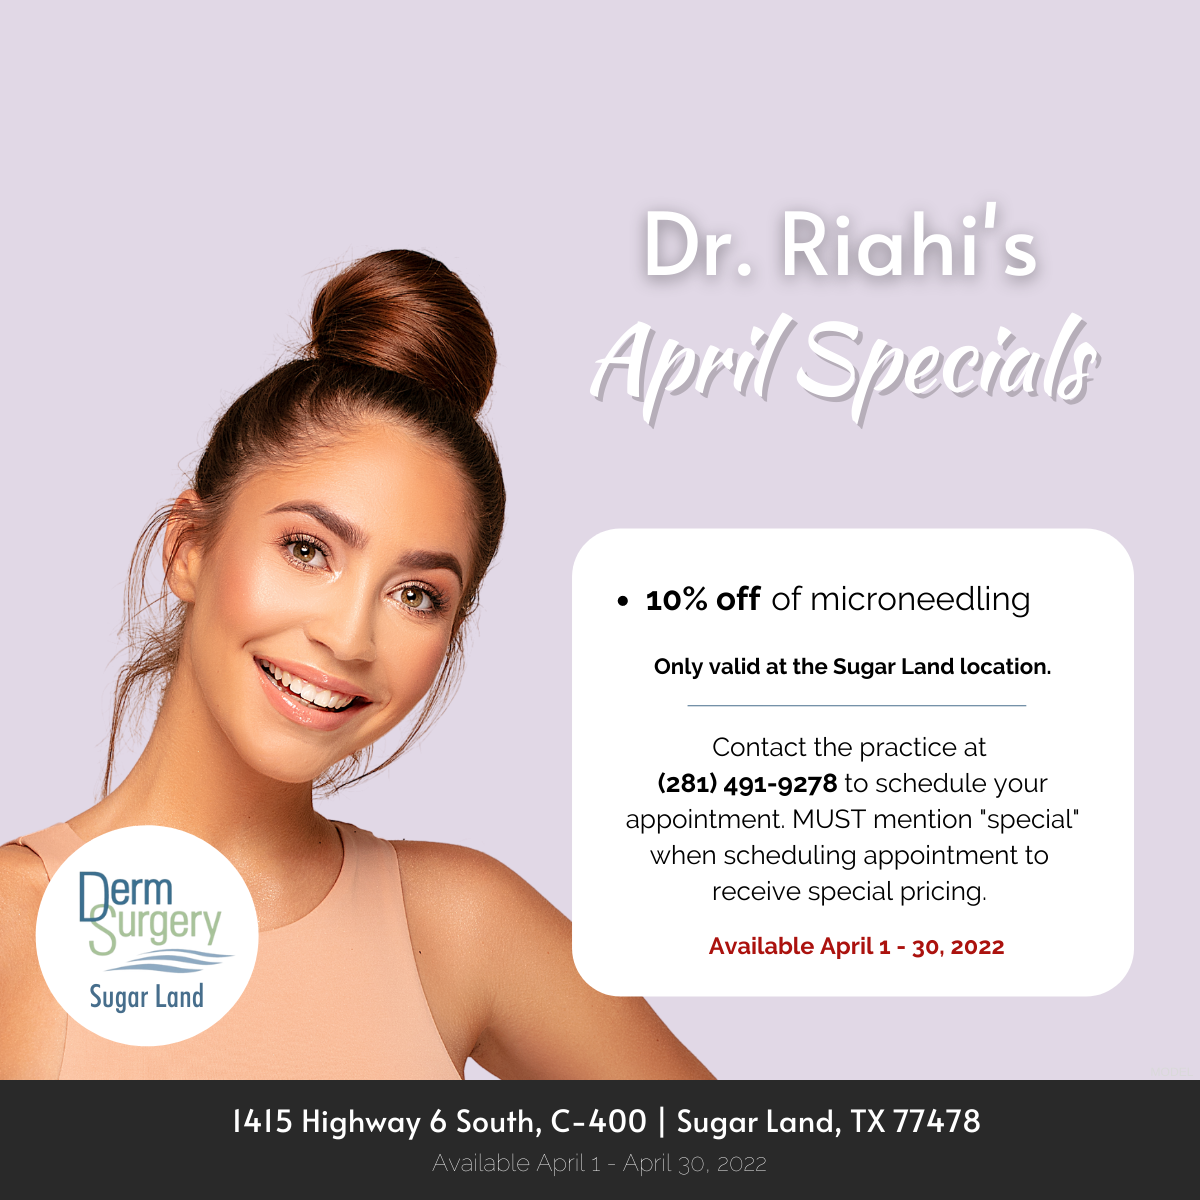 Dr. Riahi's April Specials